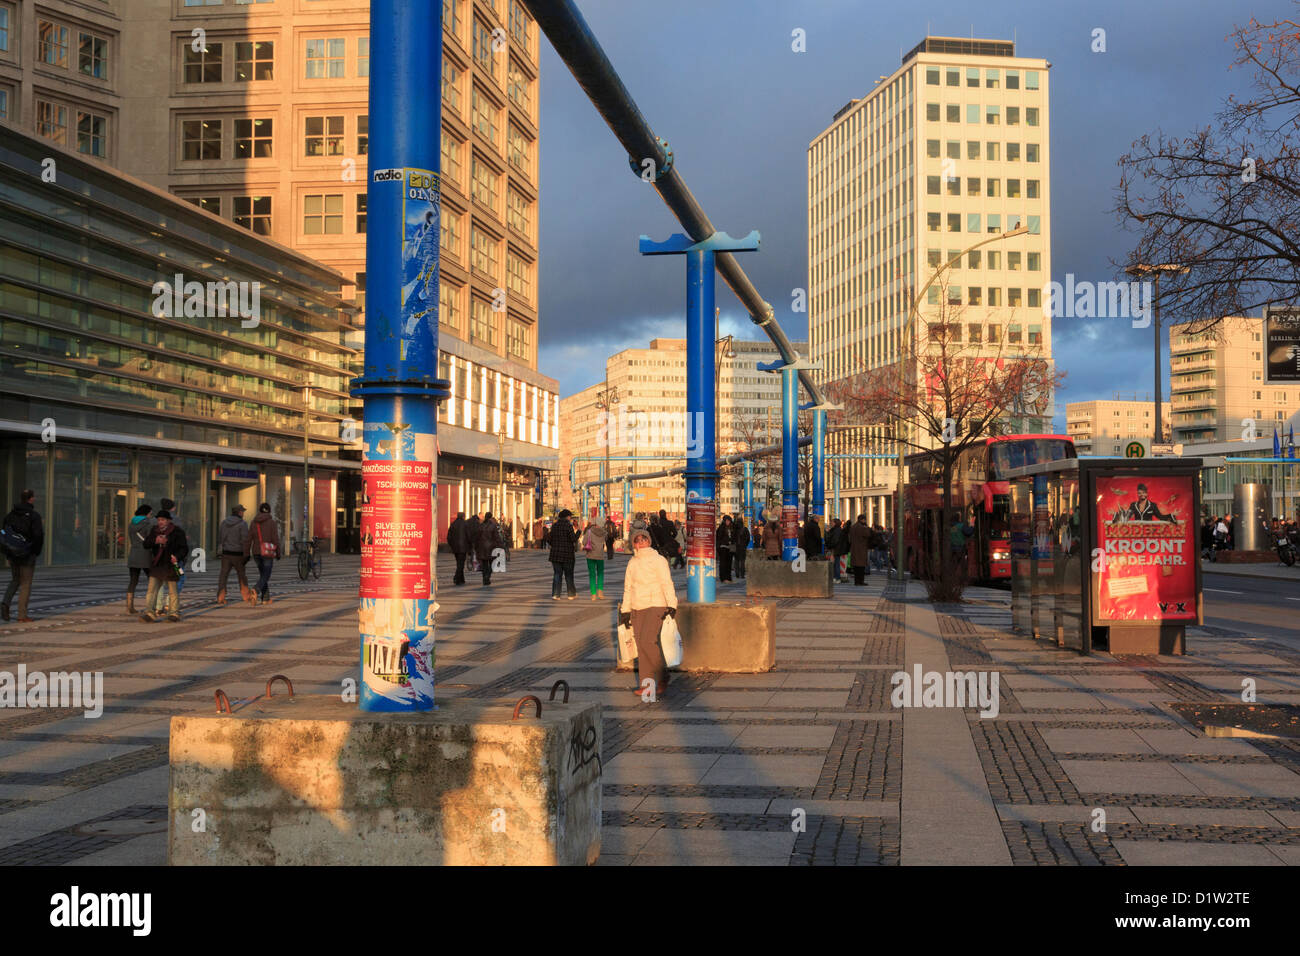 Straßenszene mit oberirdischen Leitungen entlang Gruner Straße, Alexanderplatz, Berlin Mitte, Deutschland, Europa Stockfoto